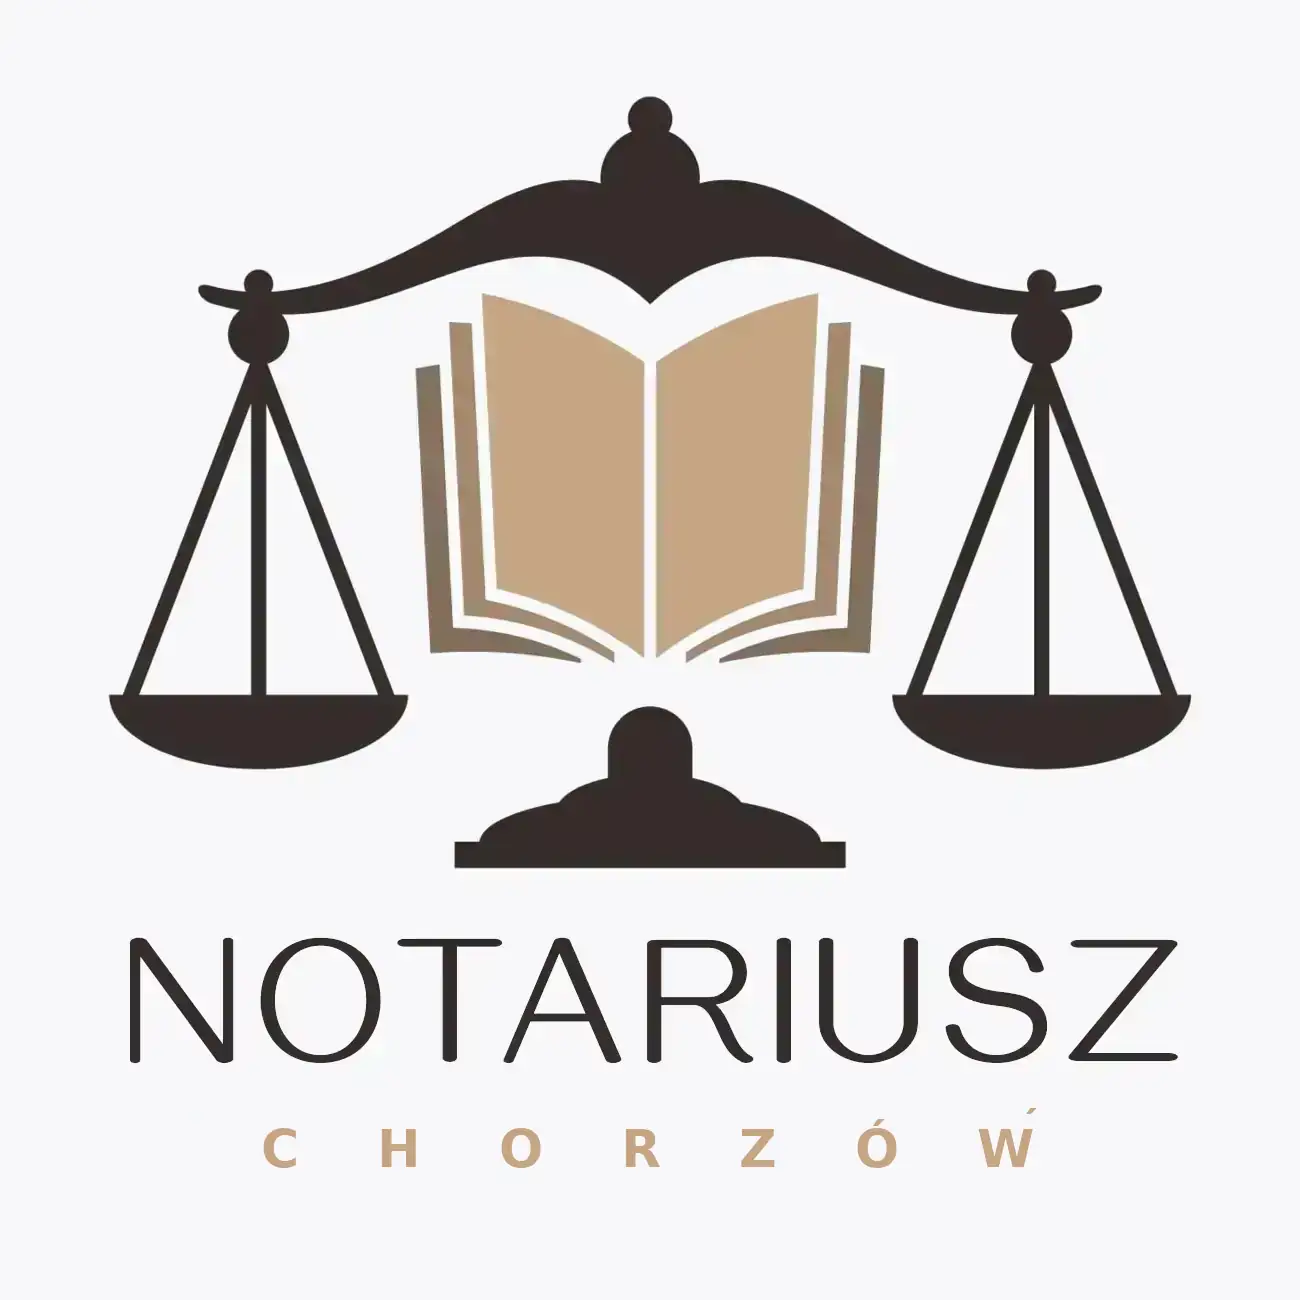 notariusz chorzow